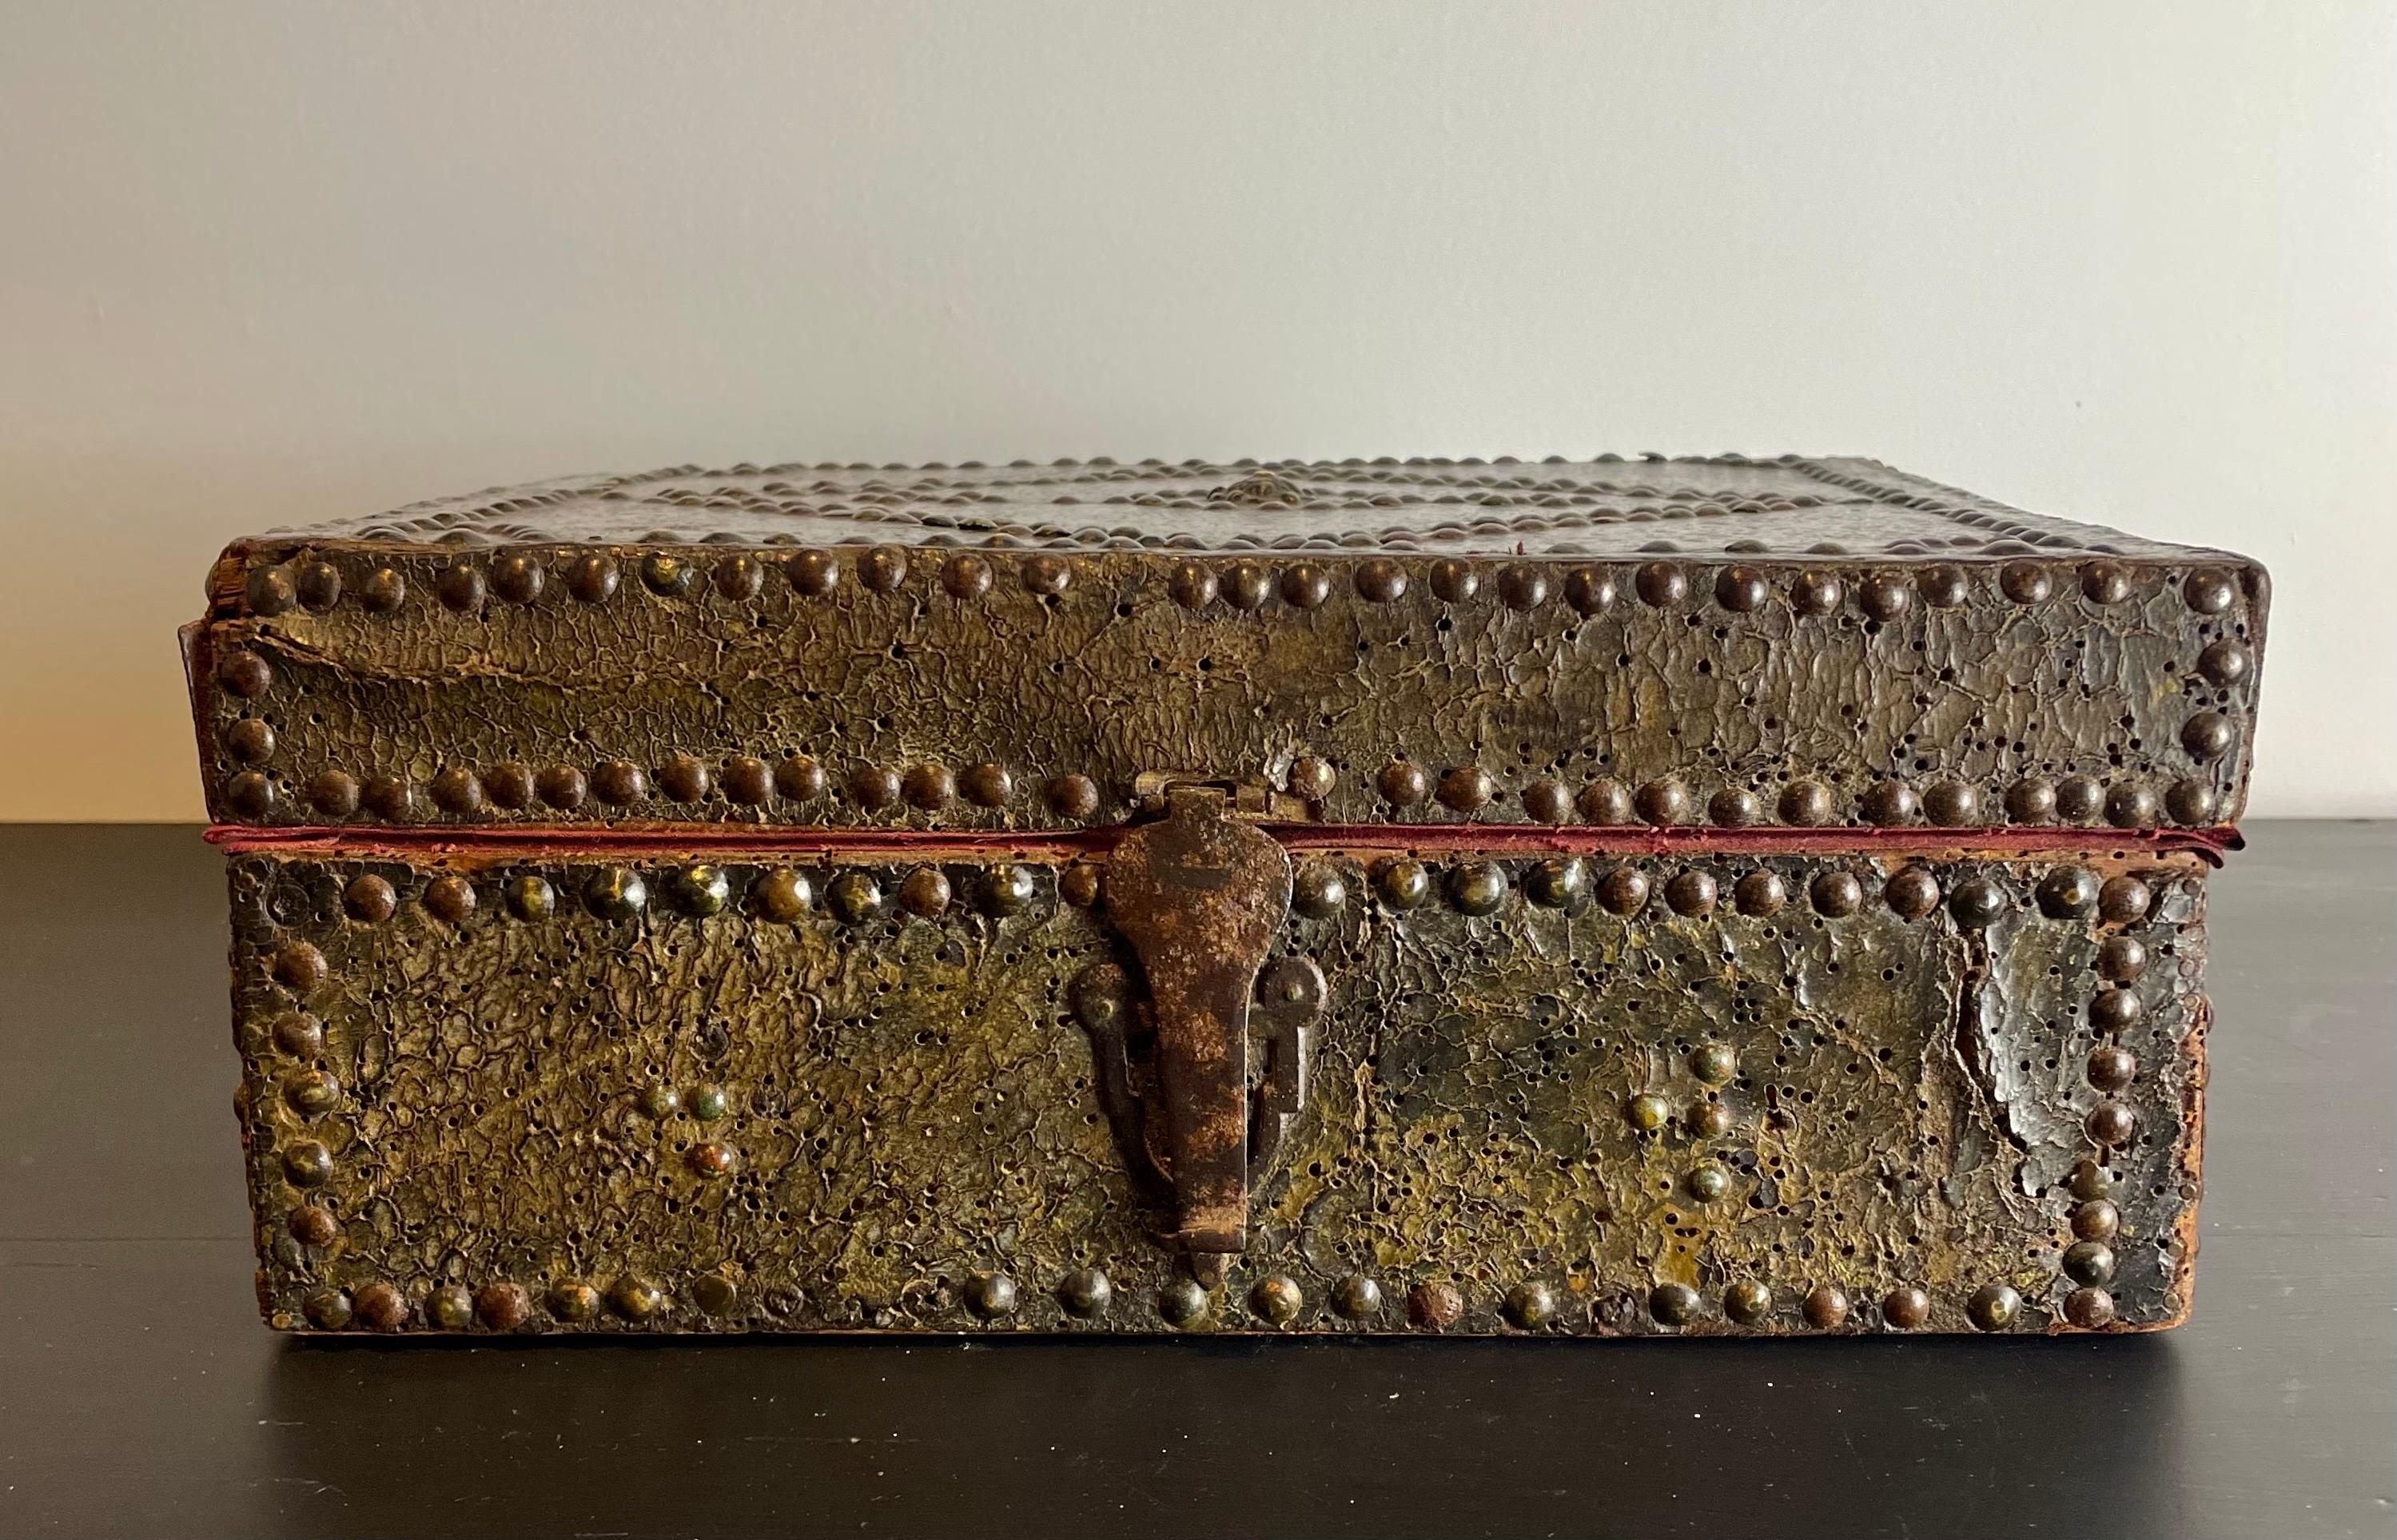 Prächtige Botenkiste aus der Zeit Ludwigs XIV., Ende des 17. und Anfang des 18. Jahrhunderts.
Diese hübsche Schachtel ist aus lederbezogenem Holz gefertigt und mit Kupfernägeln verziert, die auf der Oberseite der Schachtel Rauten bilden. Ein